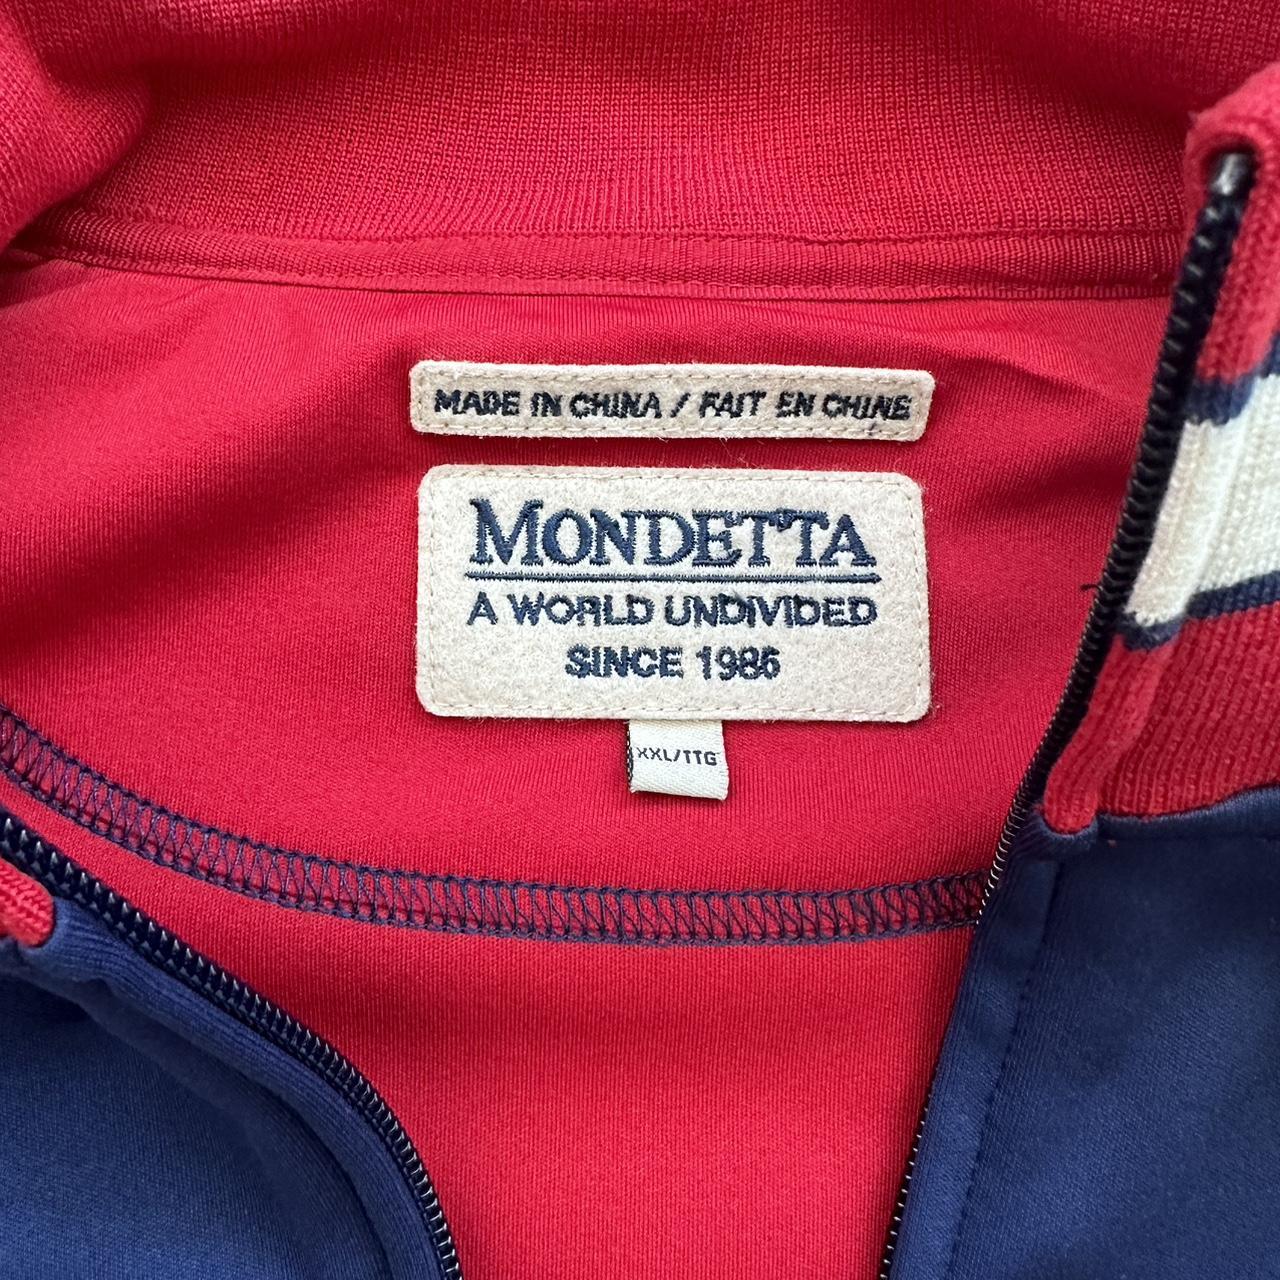 Mondetta Soccer Jacket Size Medium USA Men's Track - Depop